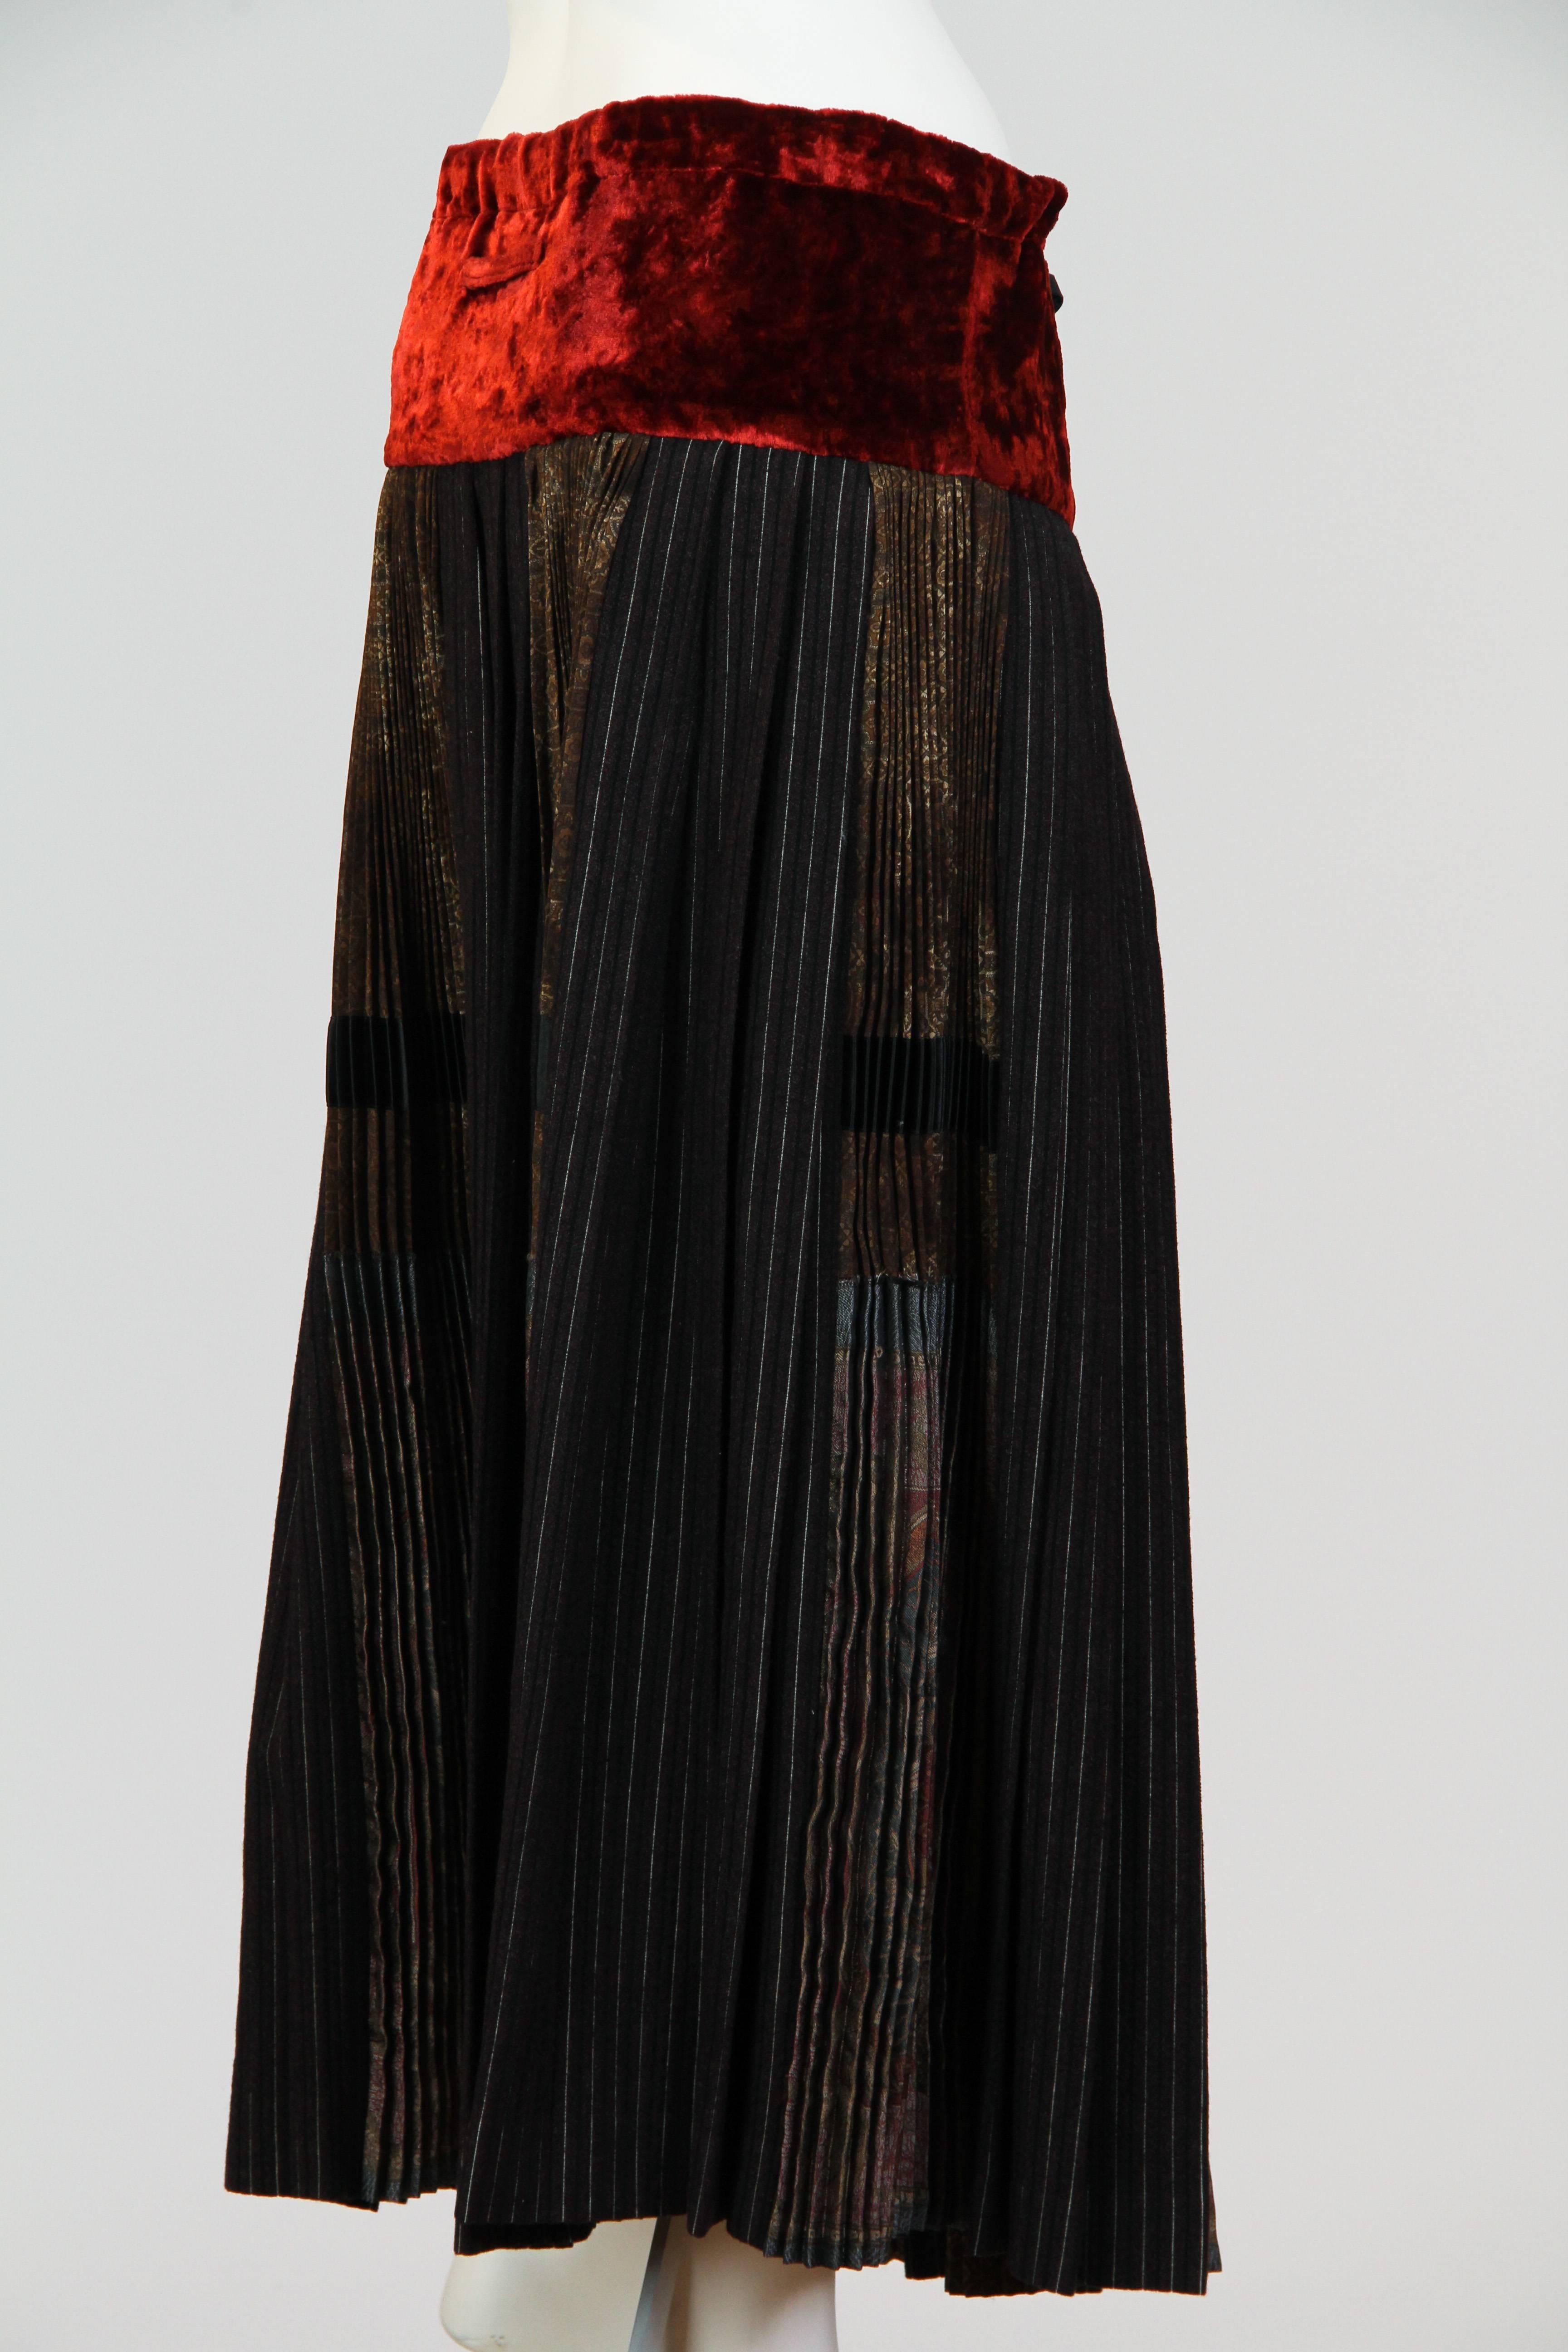 Women's Jean Paul Gaultier Skirt